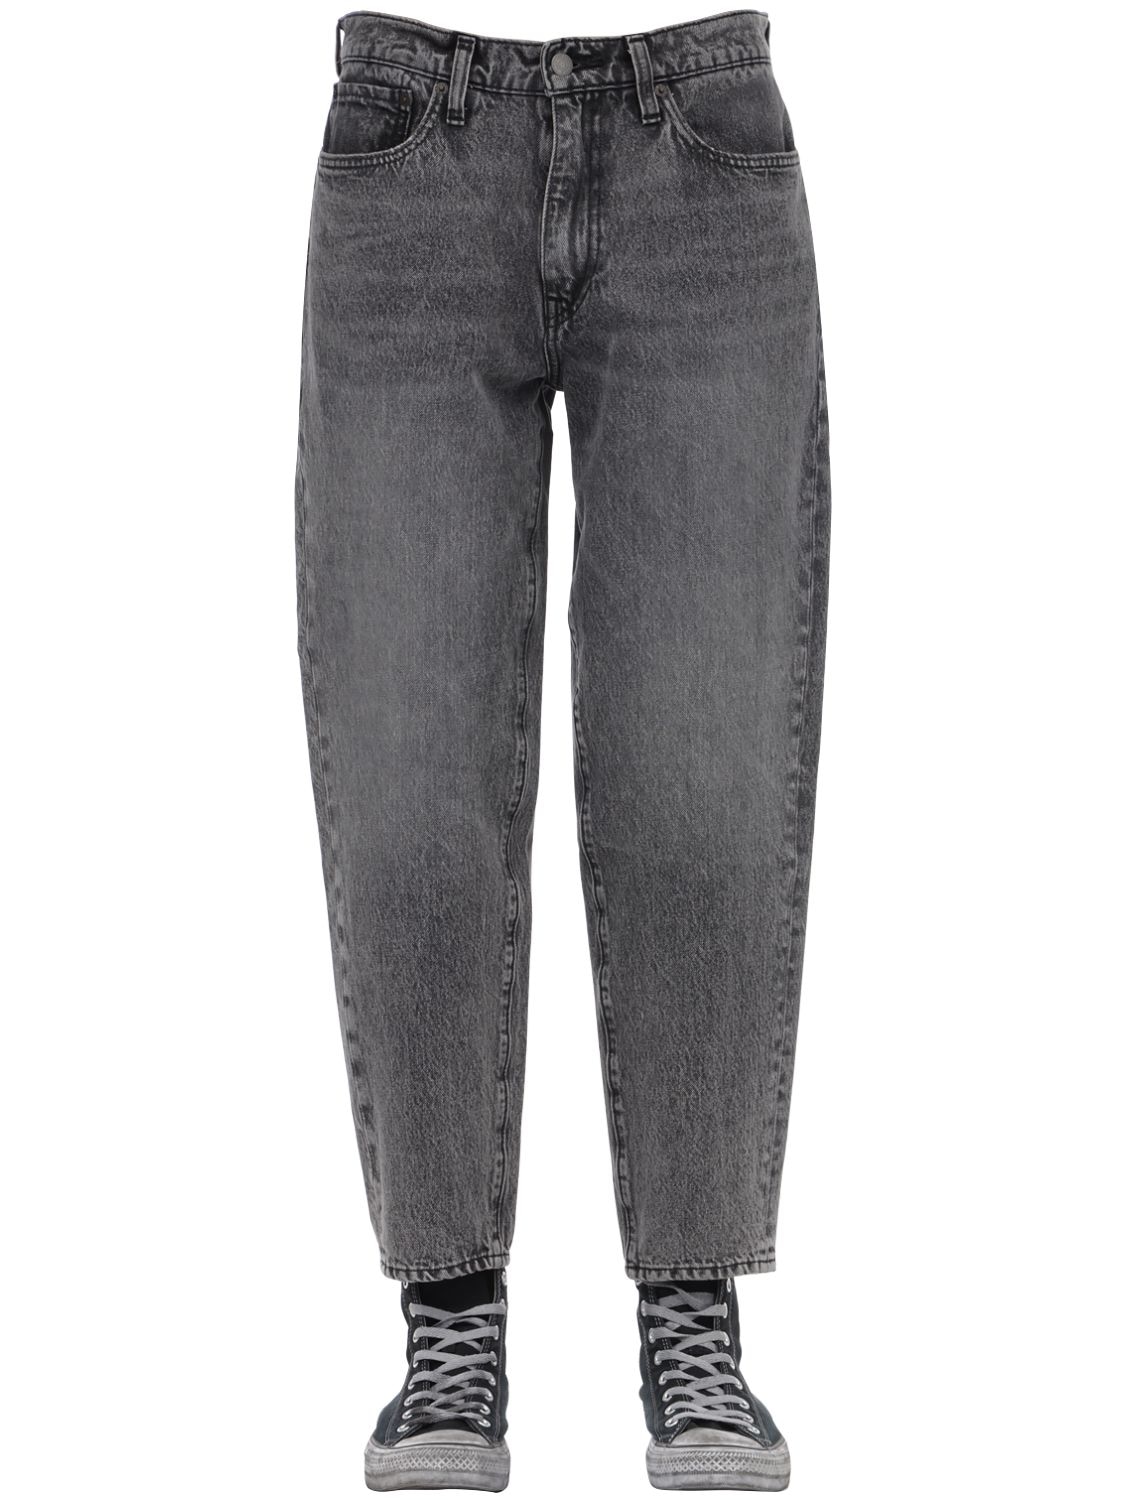 levis 562 jeans